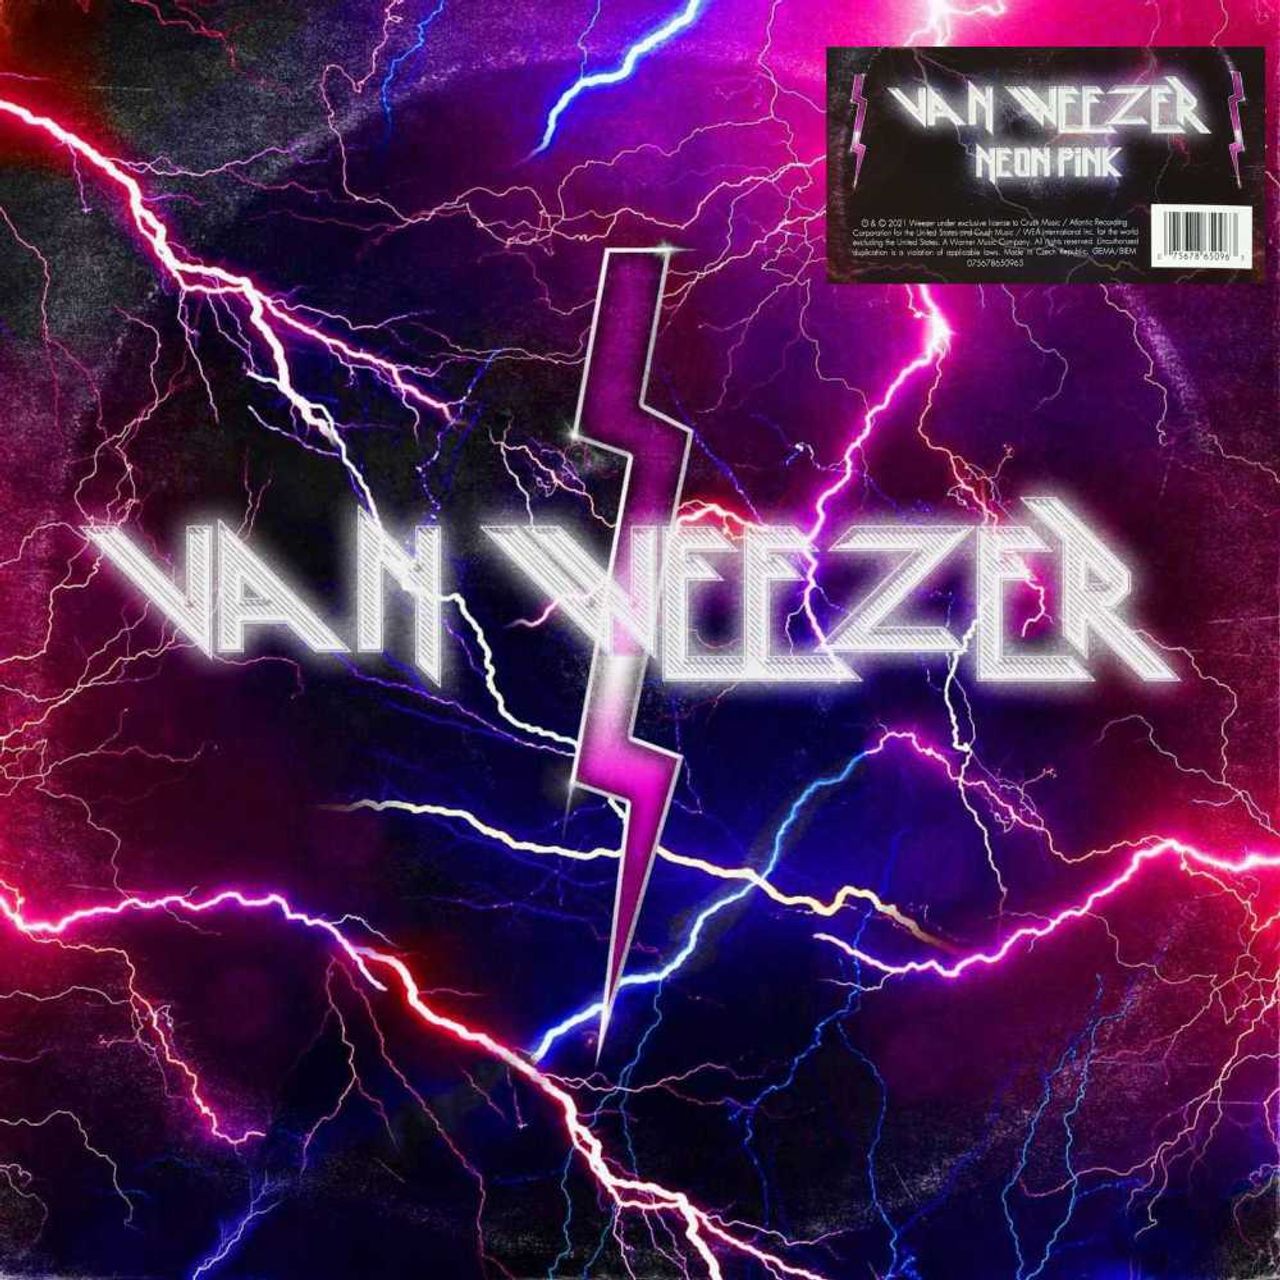 Weezer Van Weezer - Neon Pink Sealed UK LP — RareVinyl.com